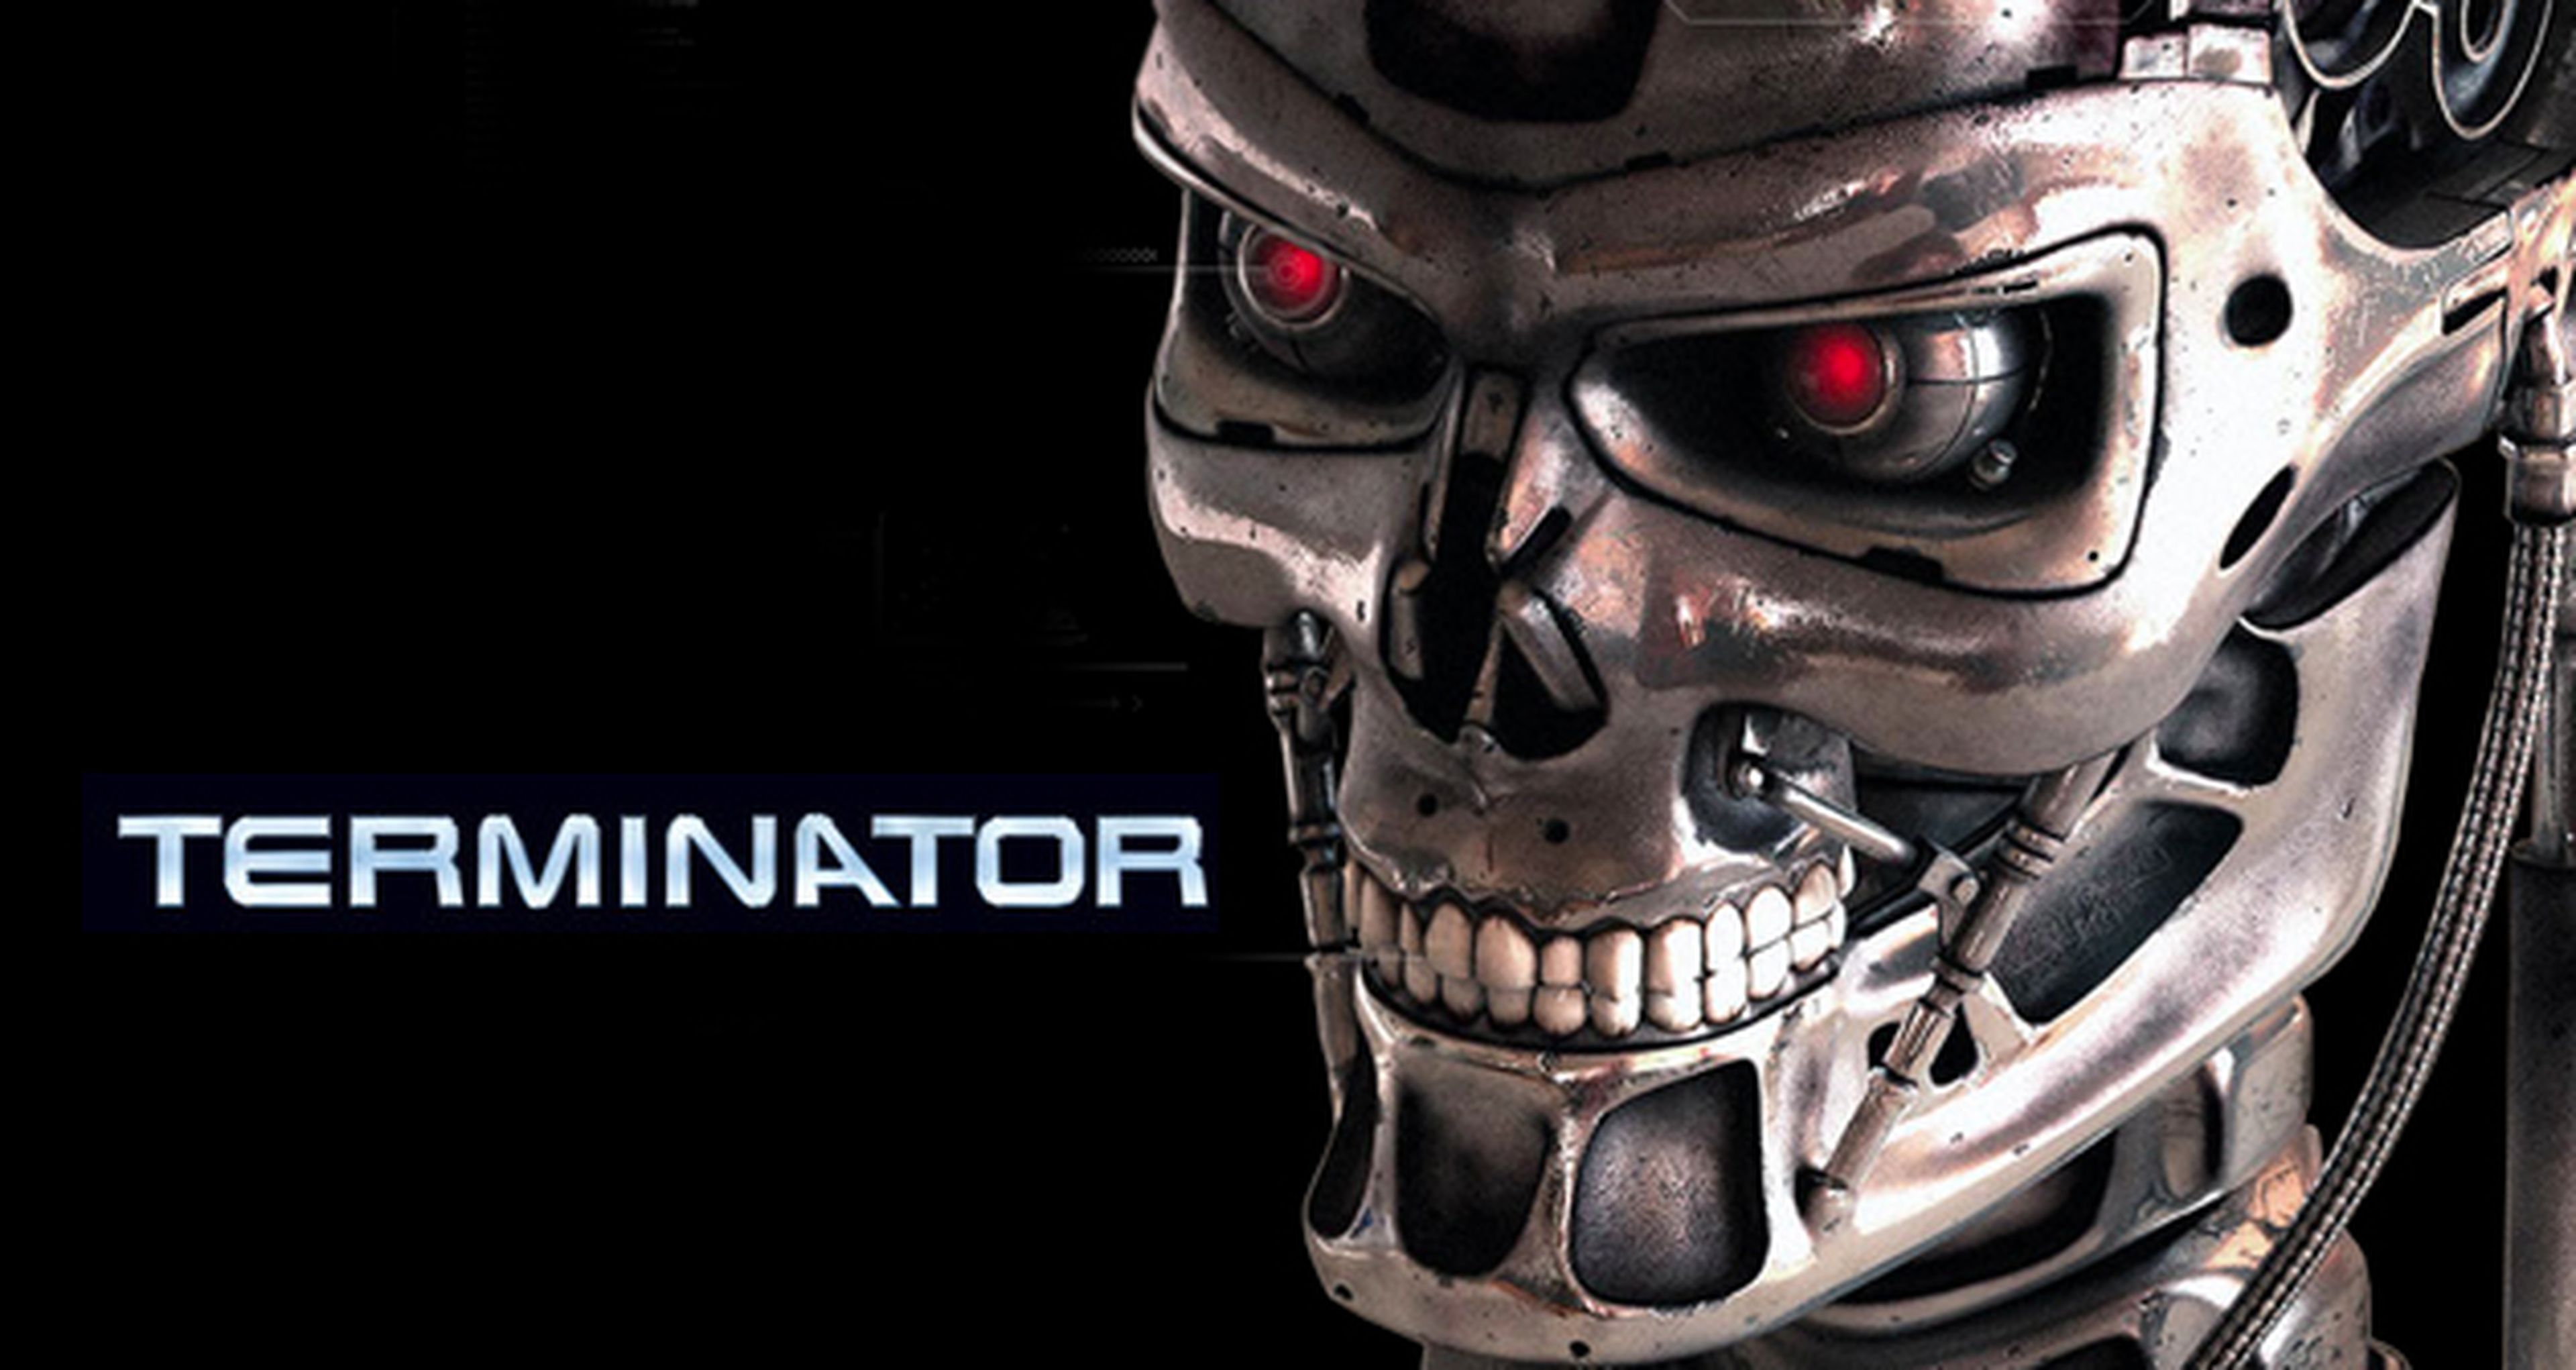 Terminator también contará con una serie para TV